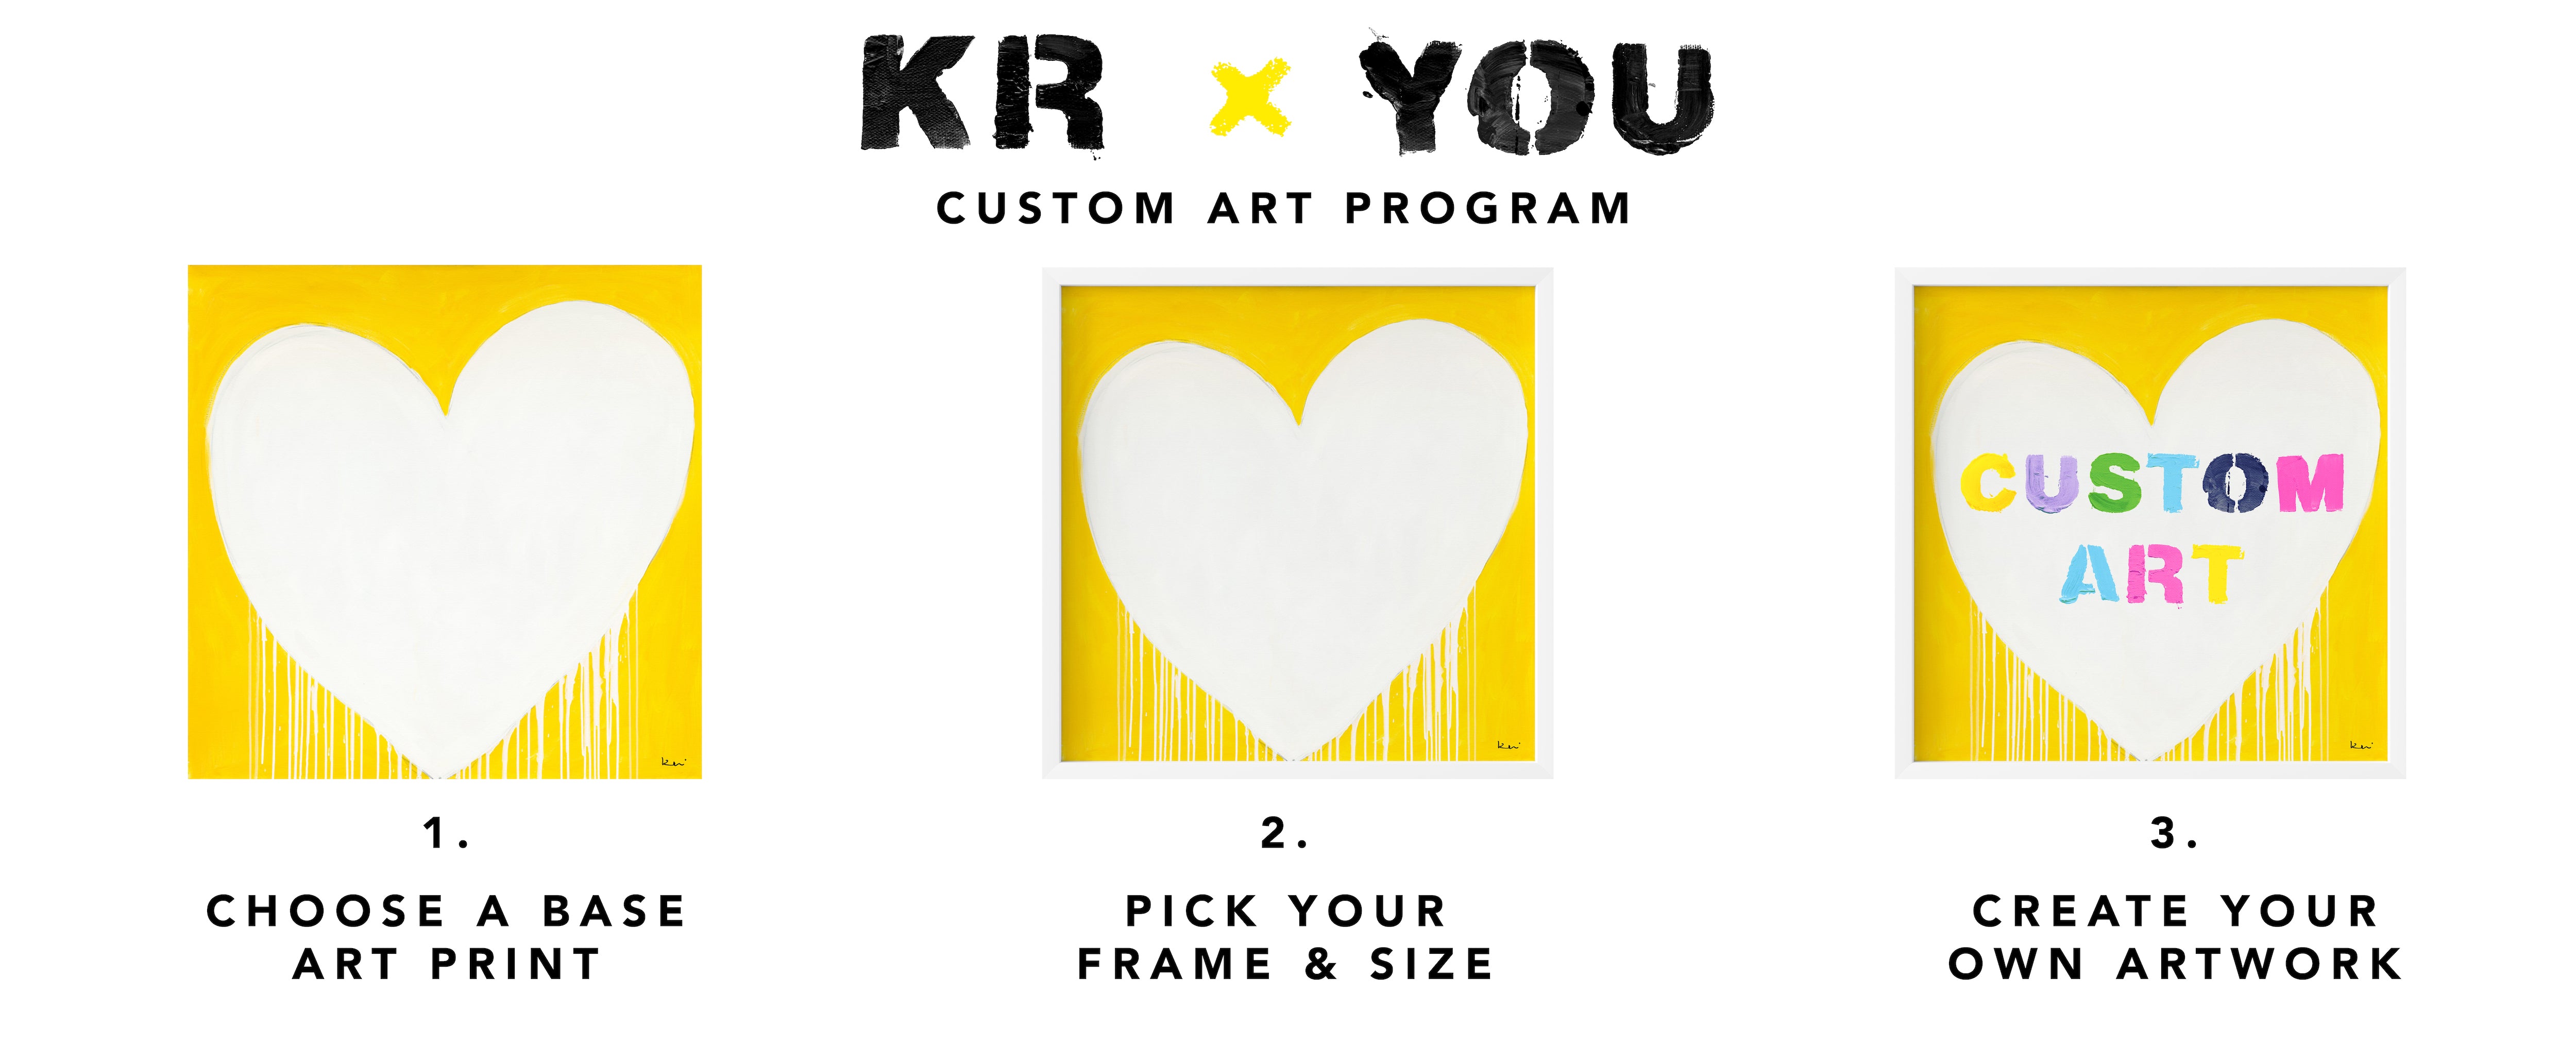 Customize Your Artwork